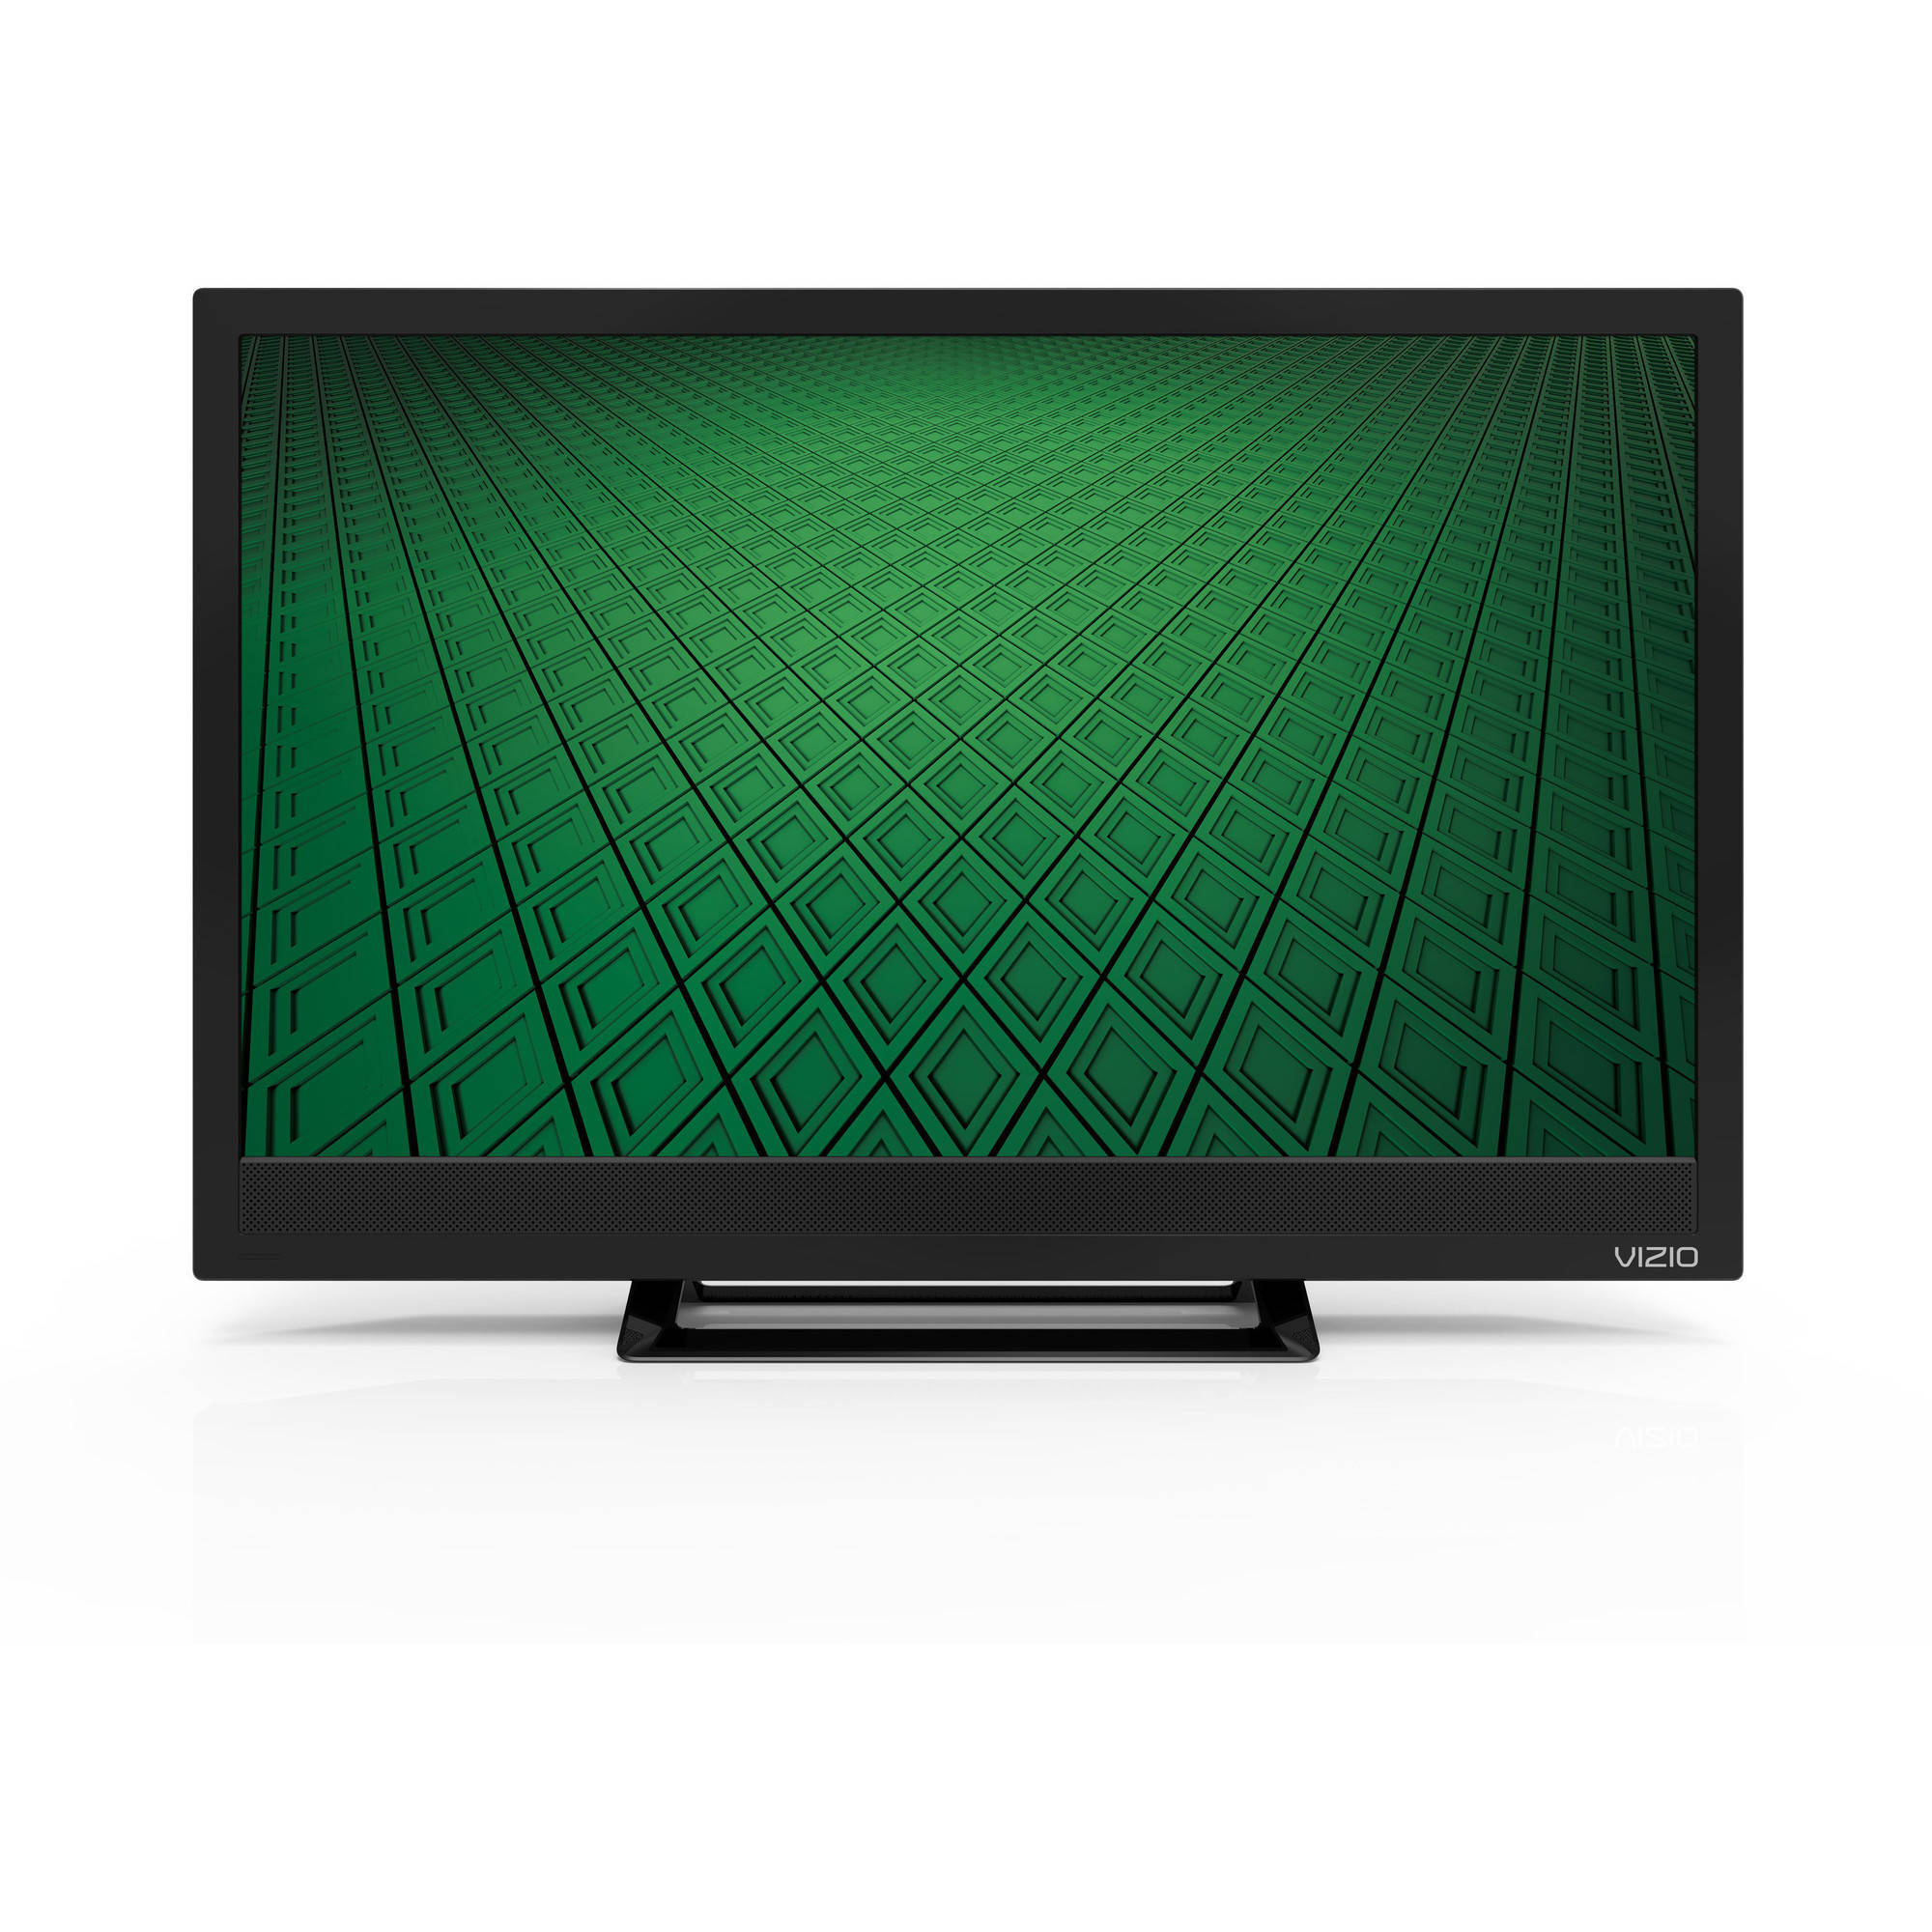 VIZIO 24" Class HD (720P) Edgelit LED TV (D24hn-D1) - image 1 of 13